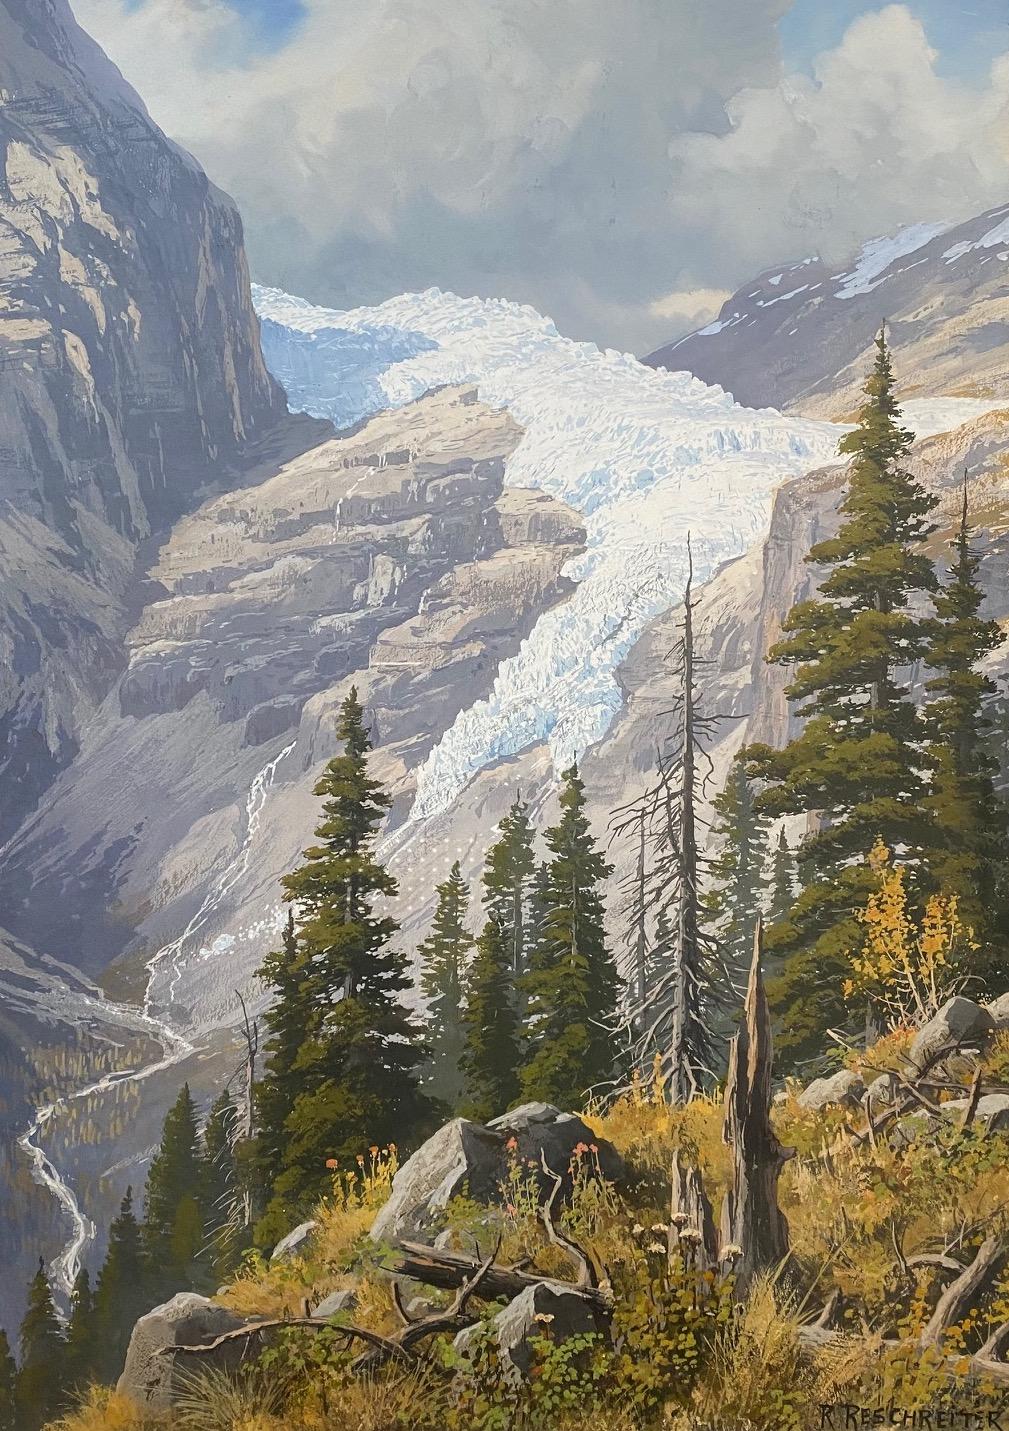 Glacier by Rudolf Reschreiter - Gouache on paper 35x50 cm